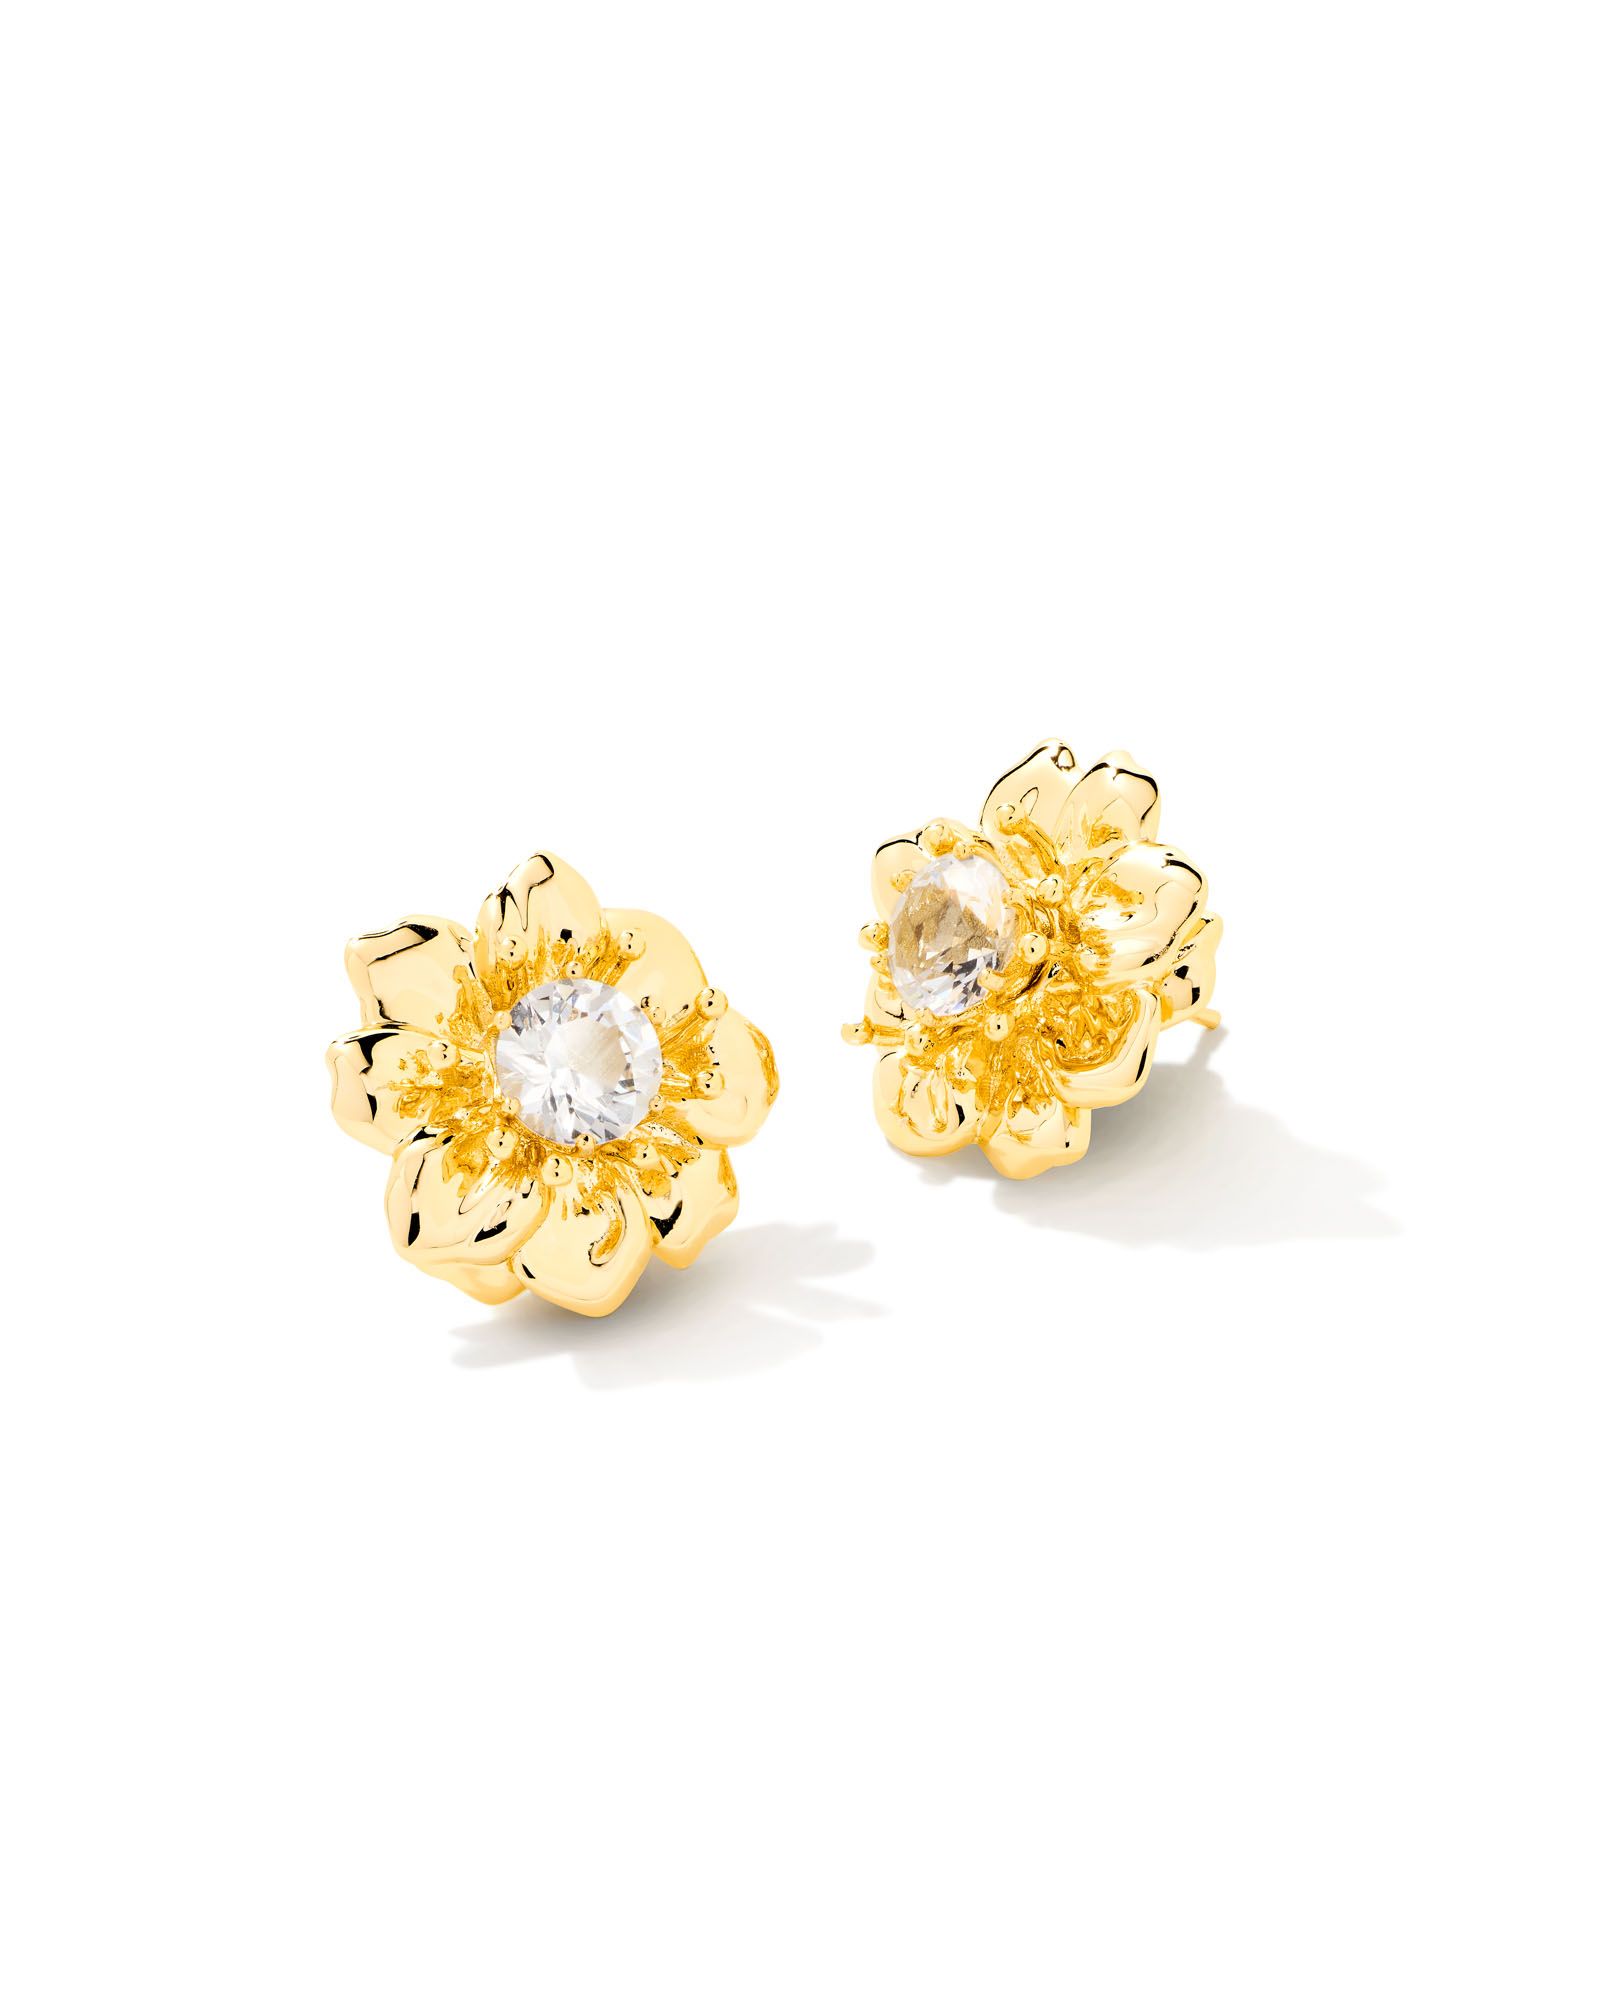 Cameron Gold Stud Earrings in White Crystal | Kendra Scott | Kendra Scott